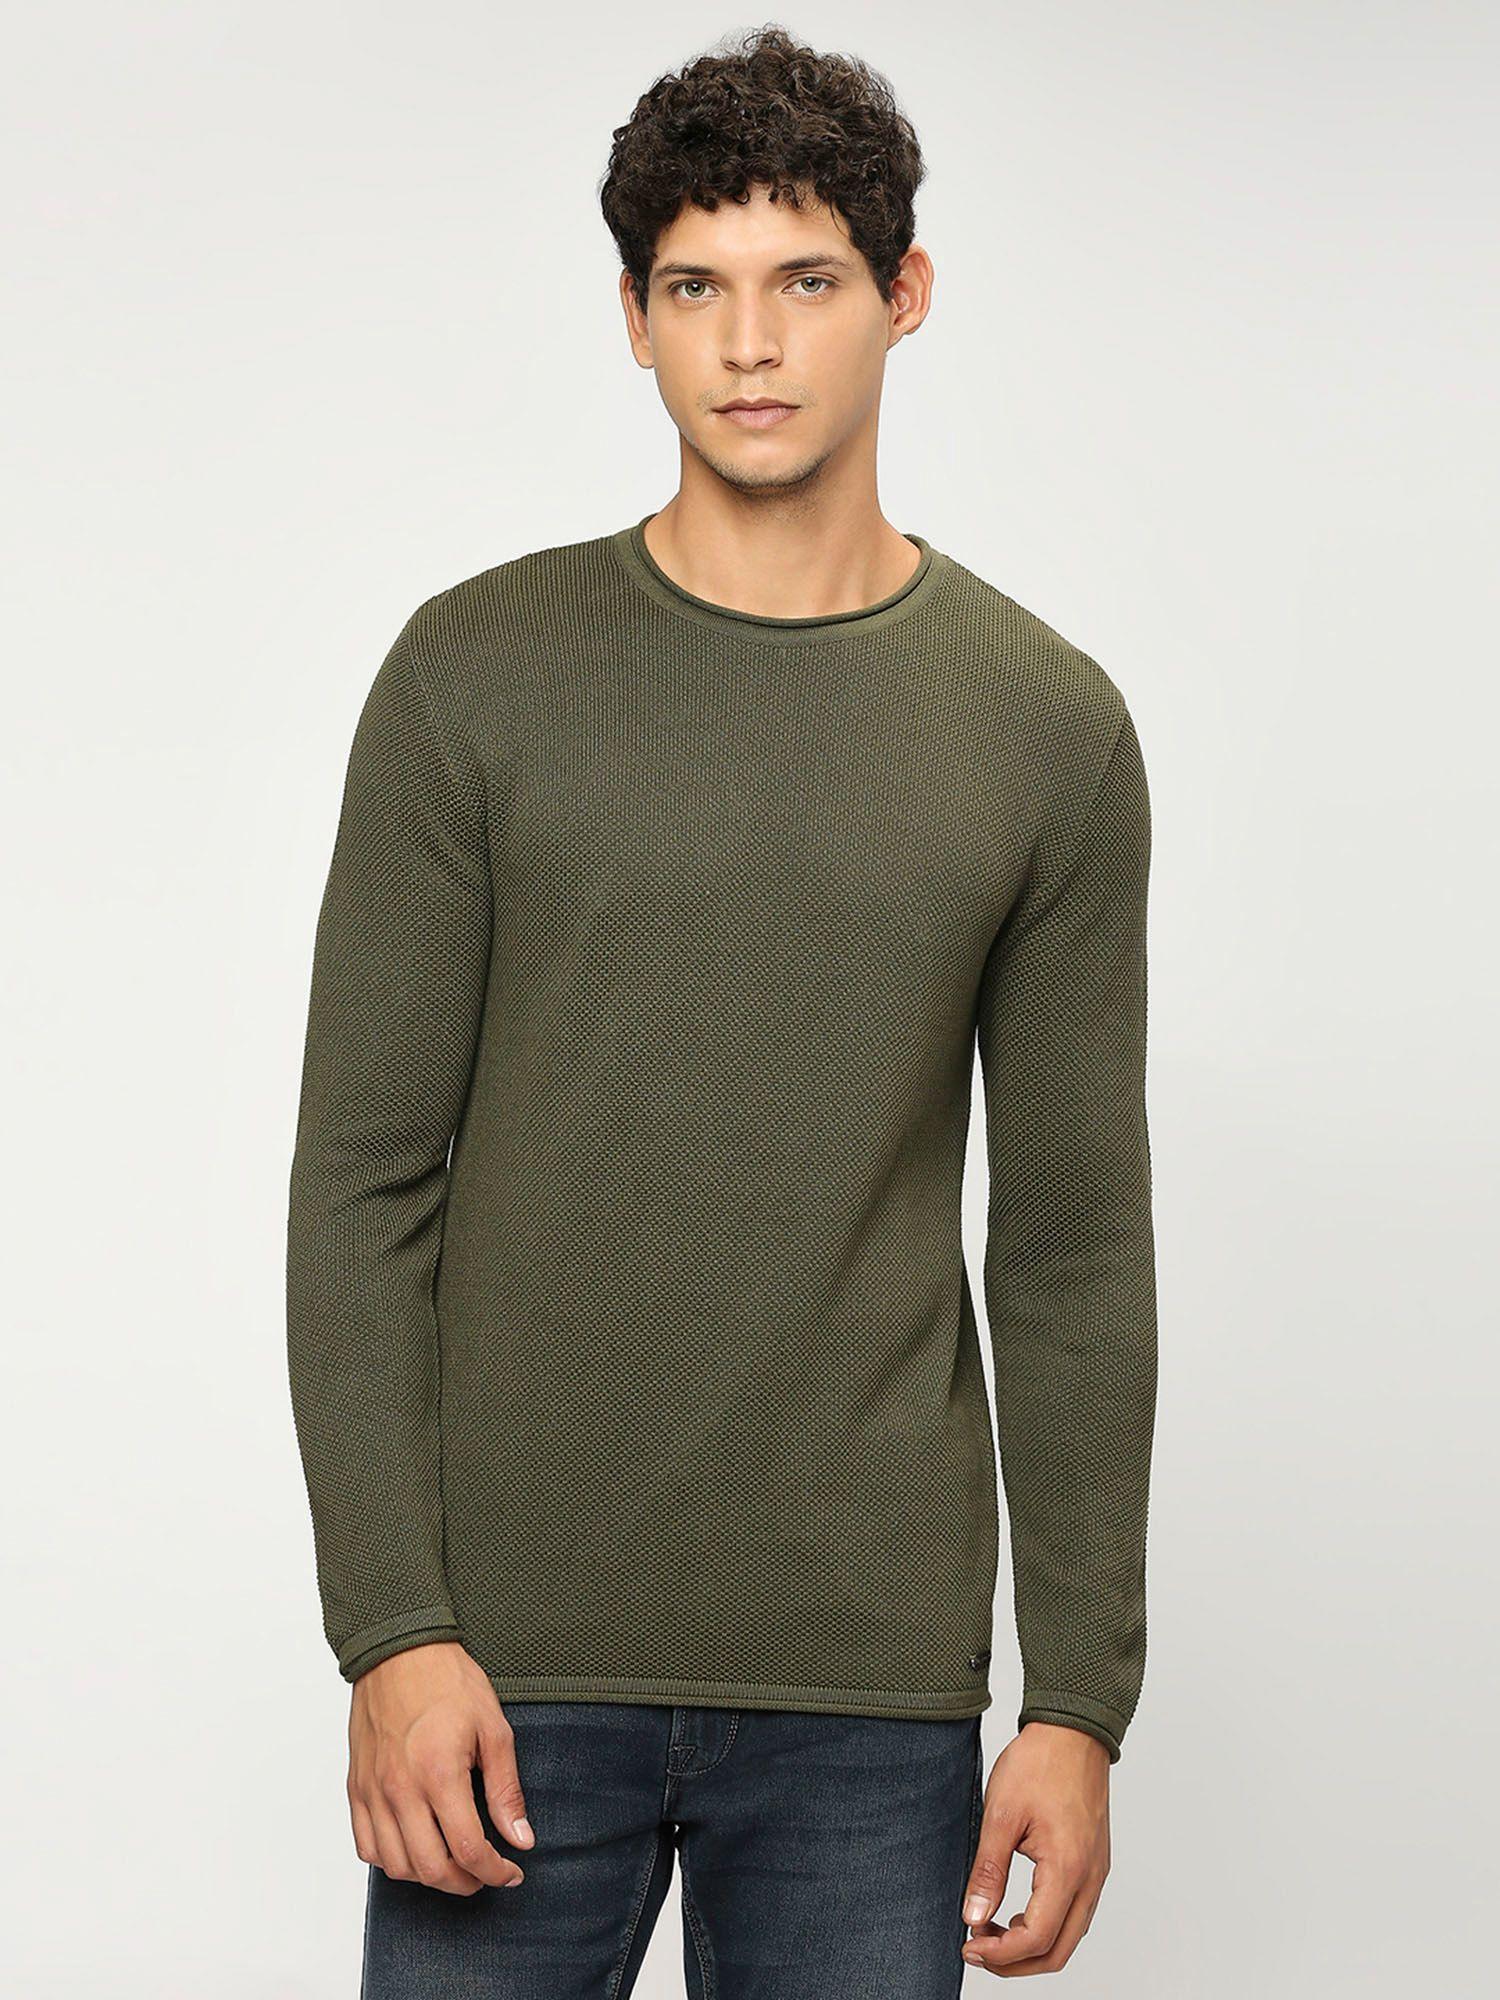 green-lightweight-long-sleeve-sweater